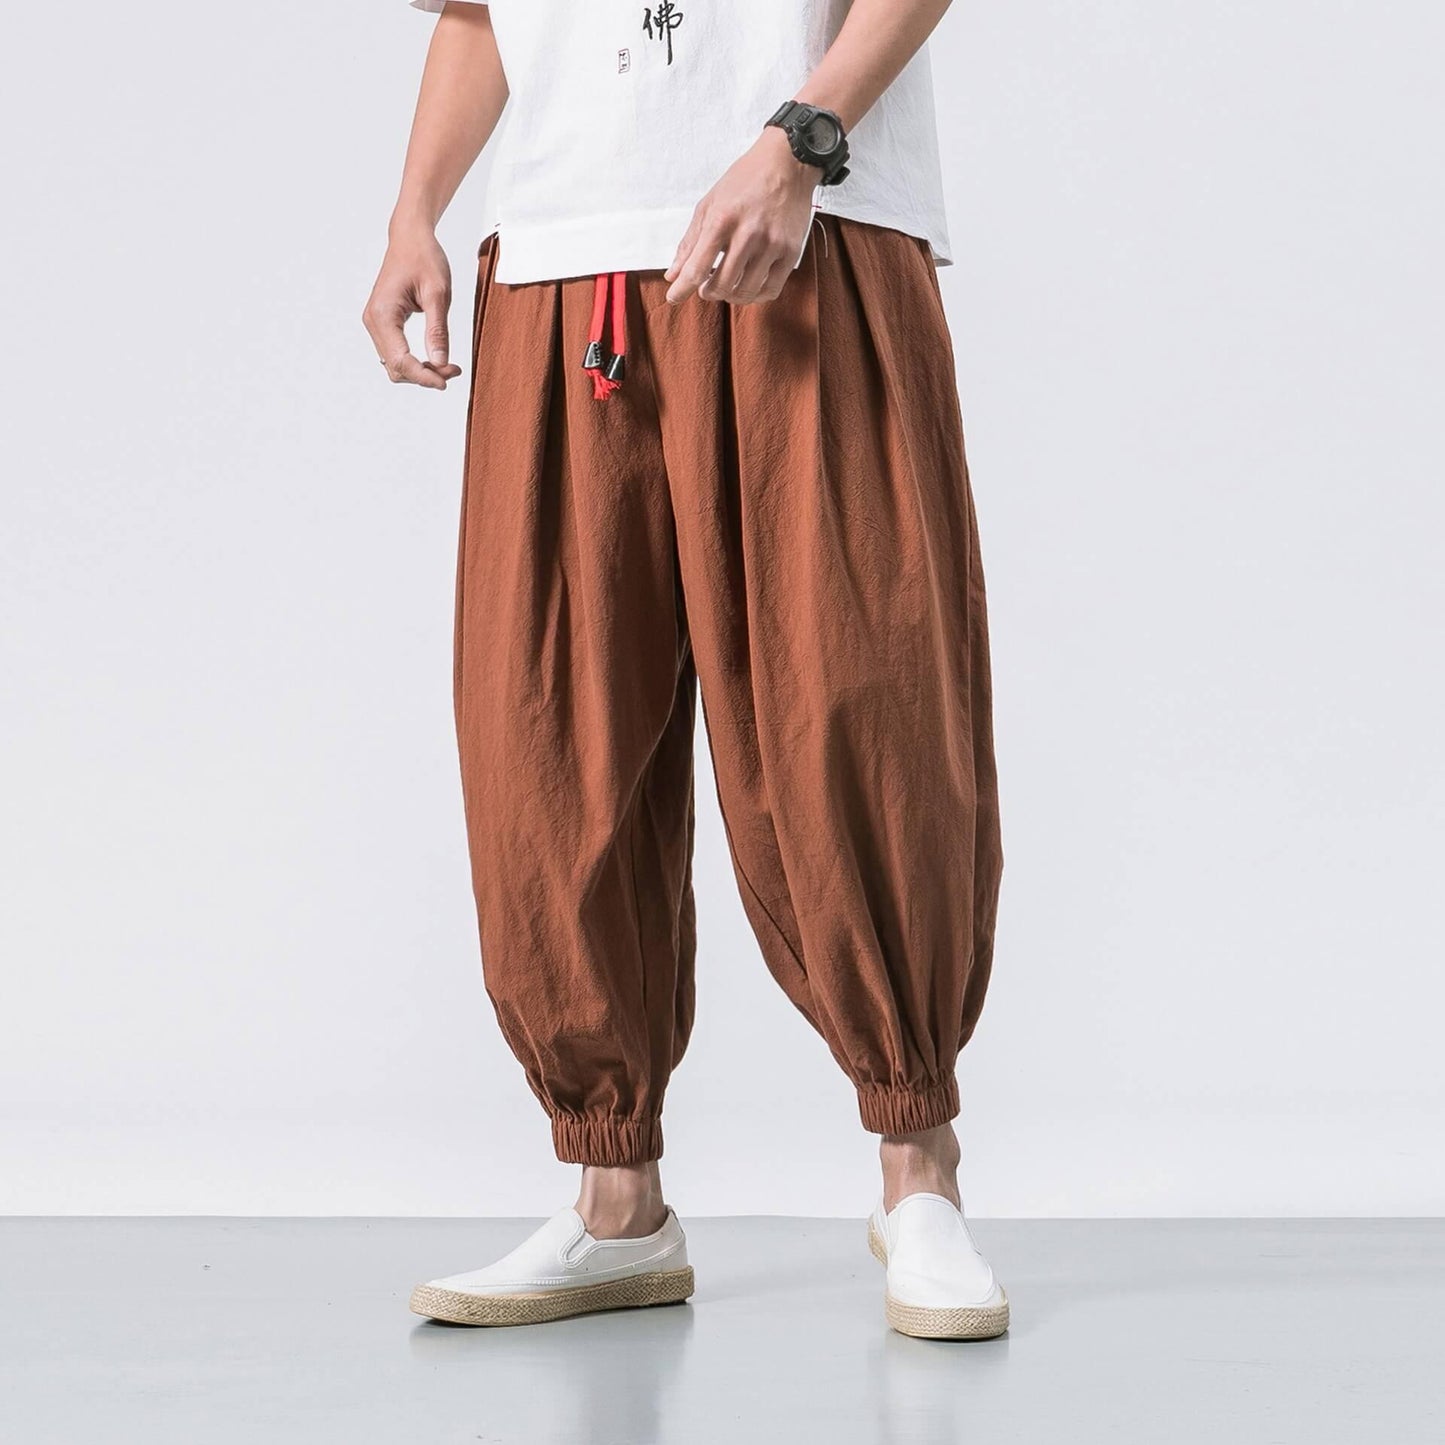 Yunarami Pants - Kyoto Apparel - Black, Brown, drawstrings, Green, pants